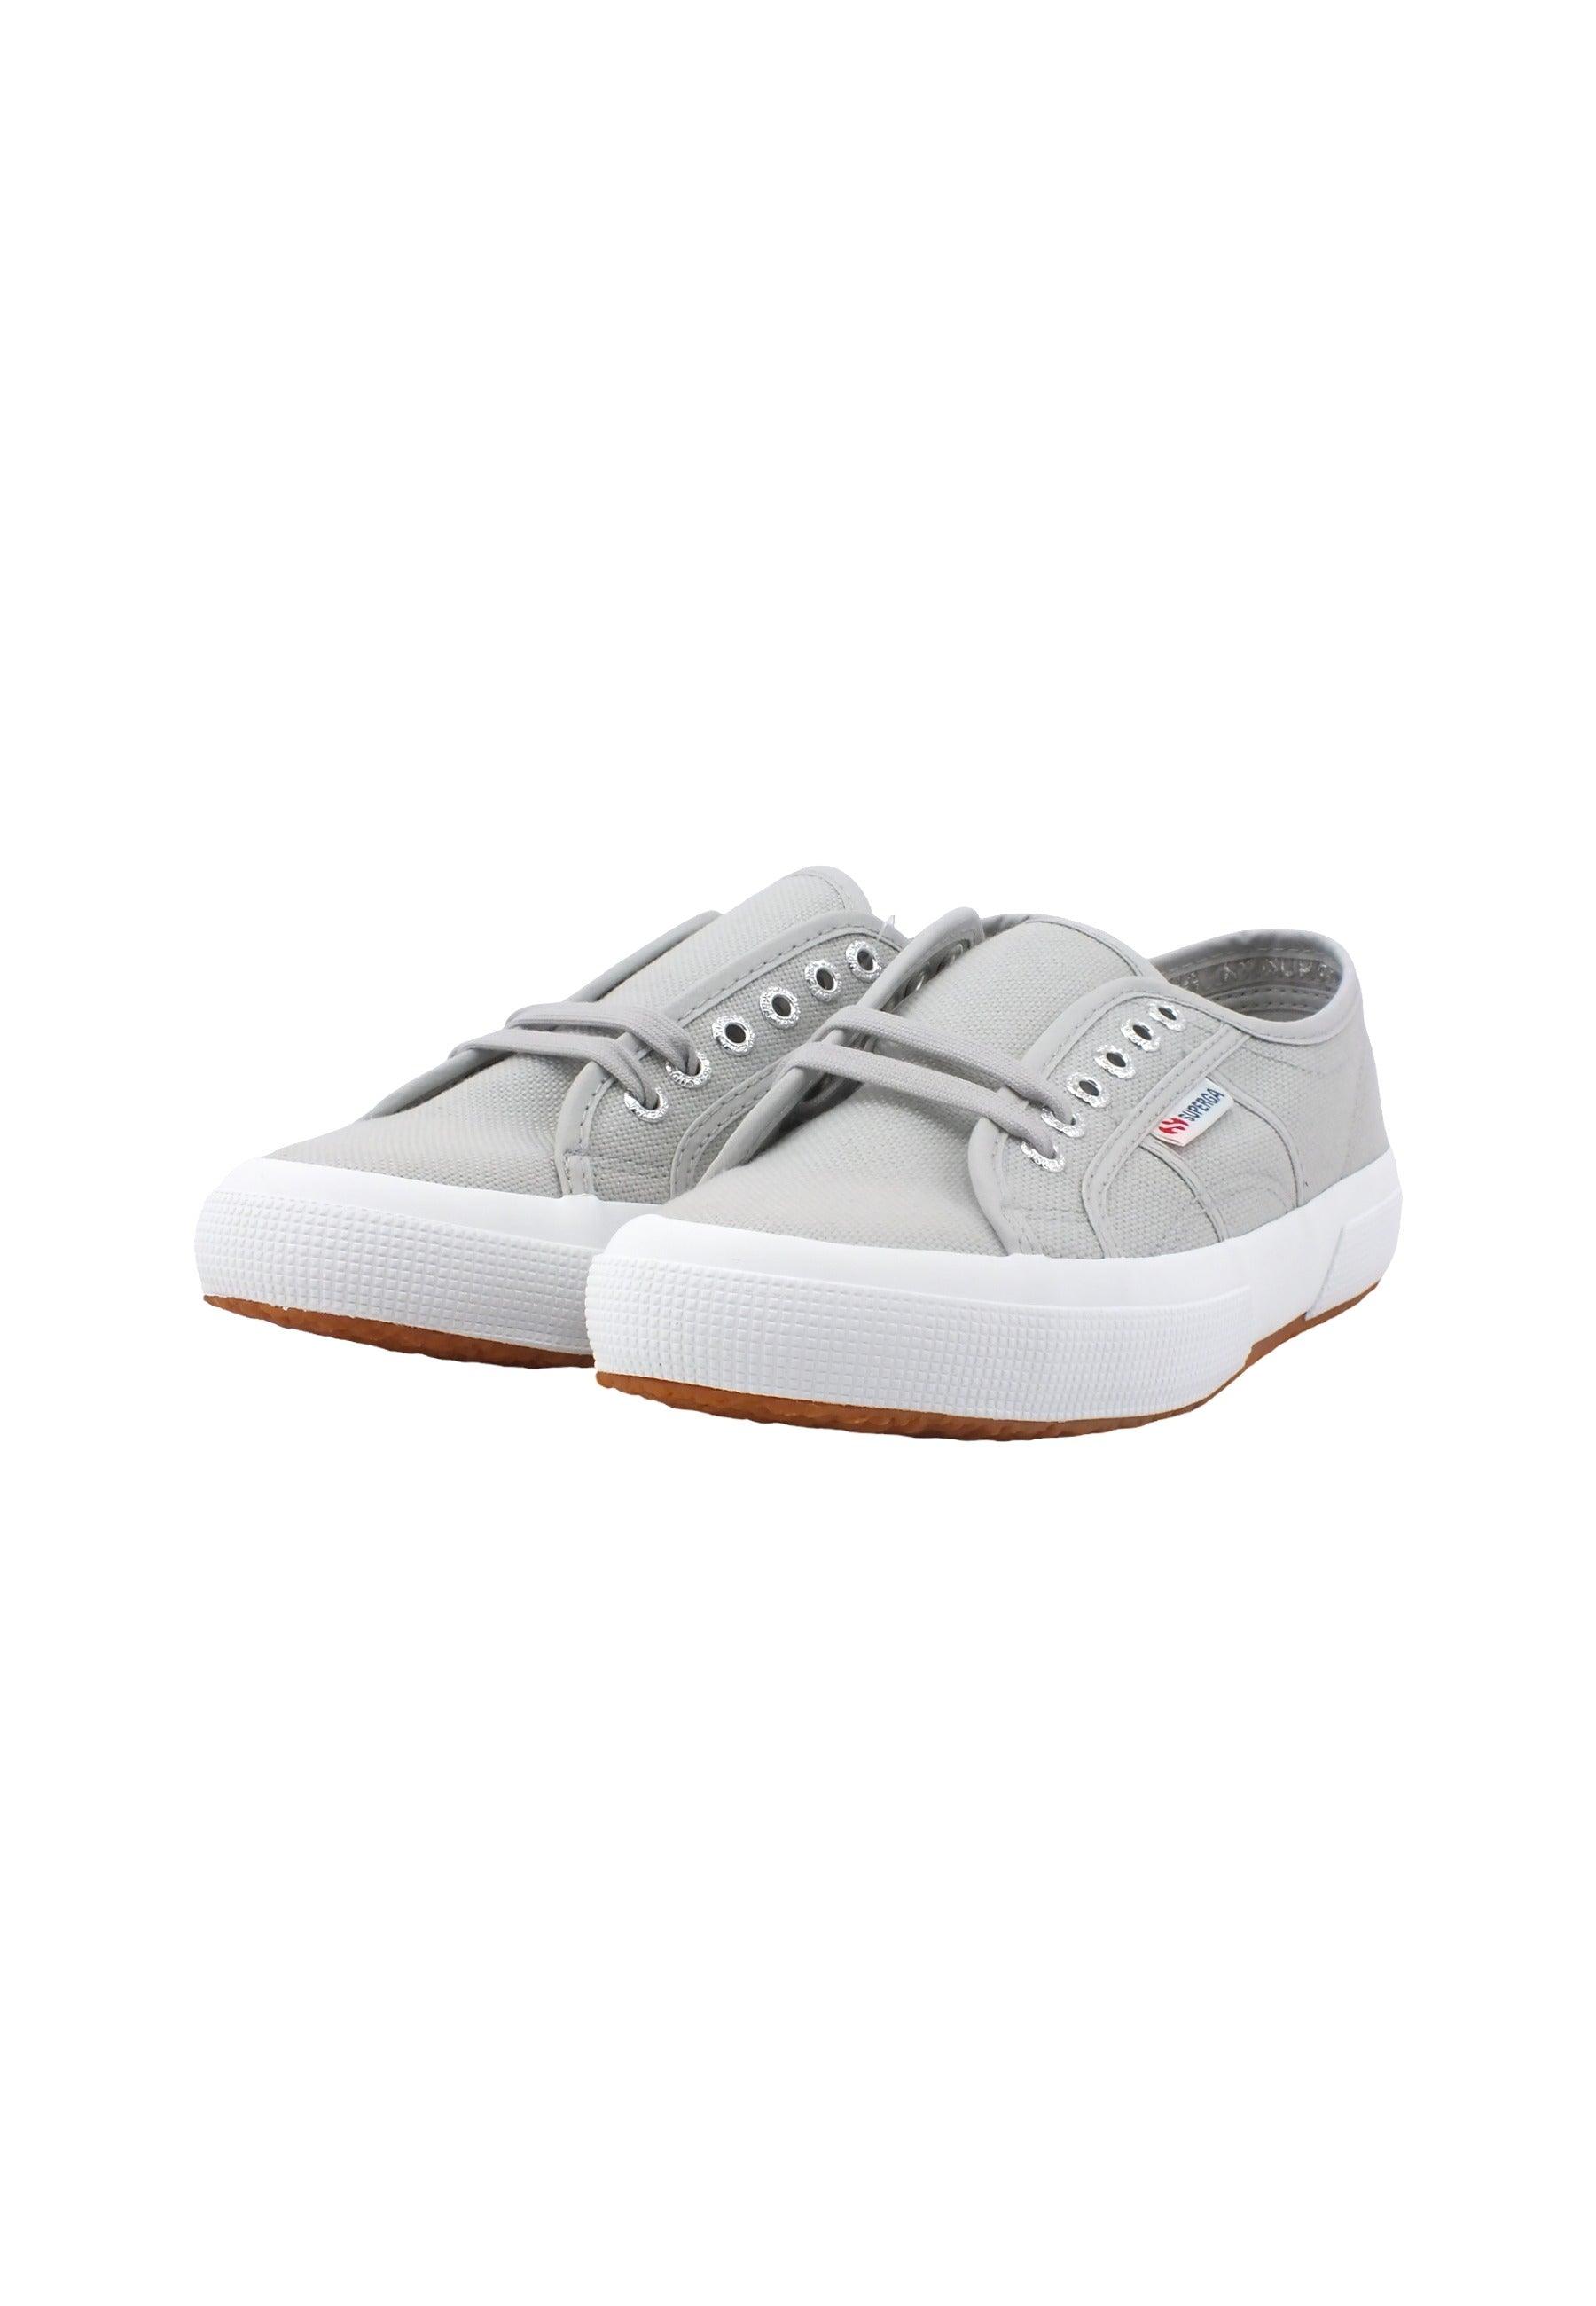 SUPERGA 2750 Cotu Classic Sneaker Donna Grey Ash S000010 - Sandrini Calzature e Abbigliamento